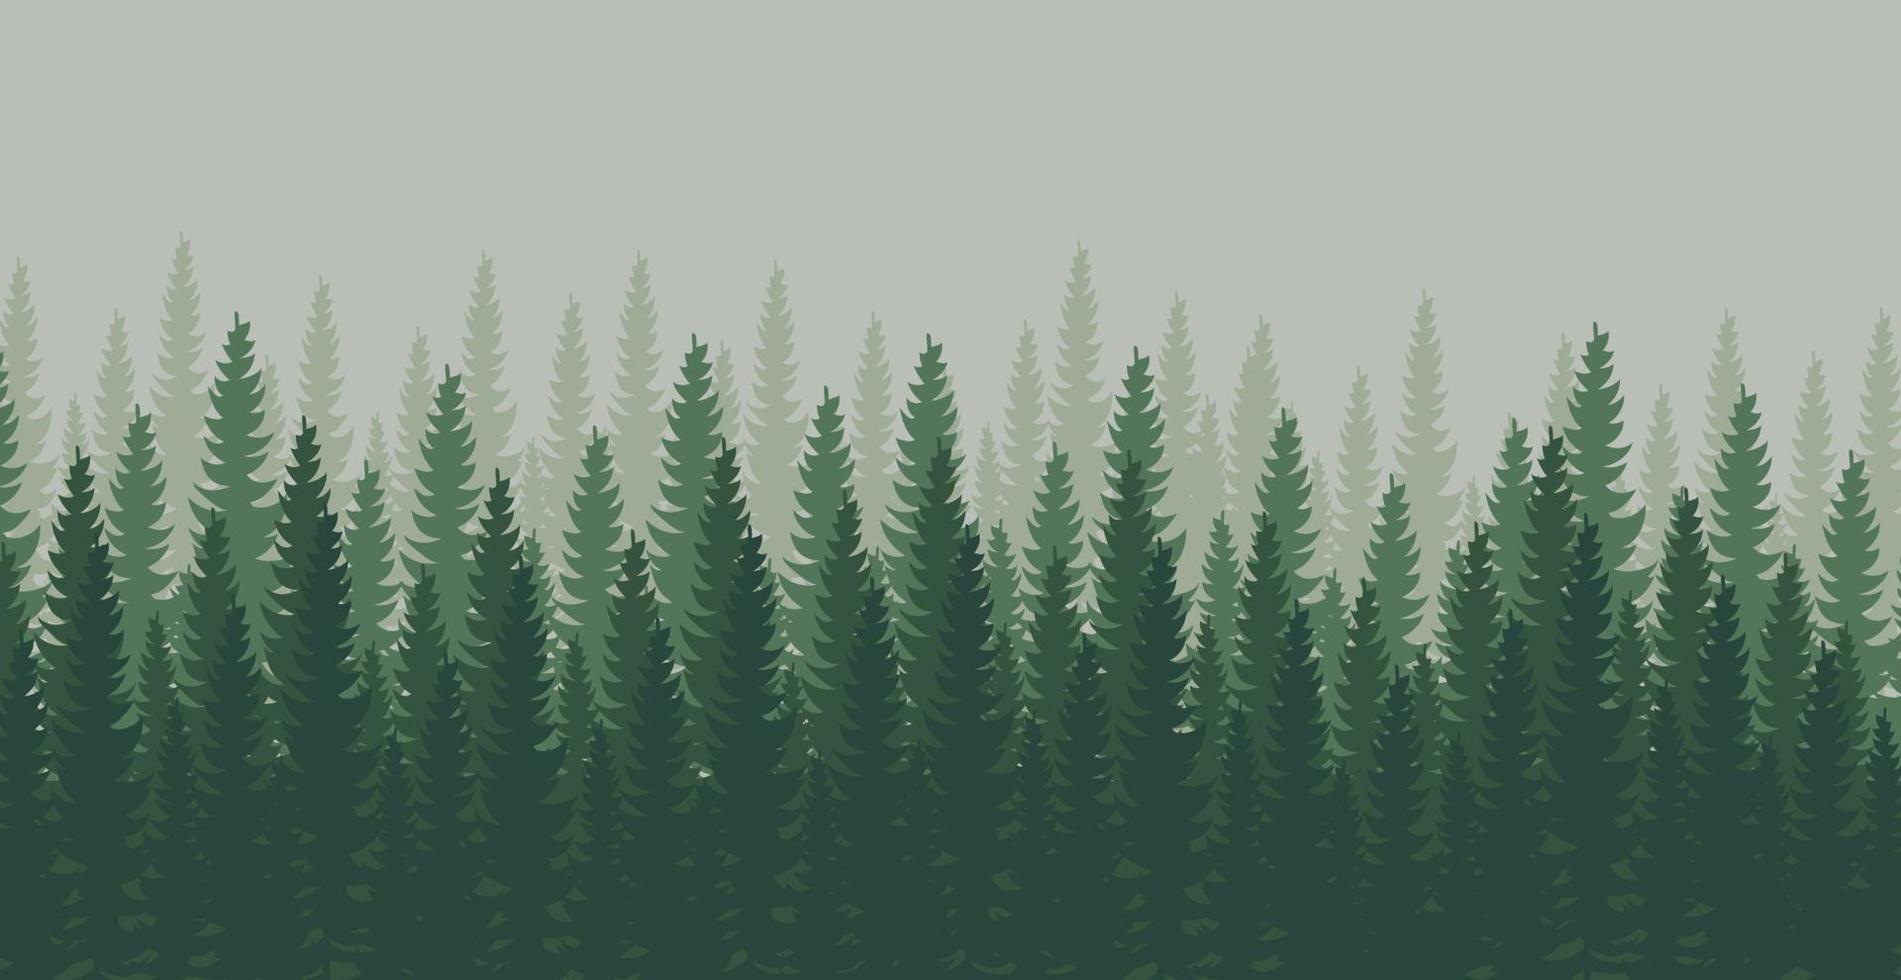 panorama da floresta densa, paisagem verde natural de abetos e pinheiros, plano de fundo da web, modelo - ilustração vetorial vetor